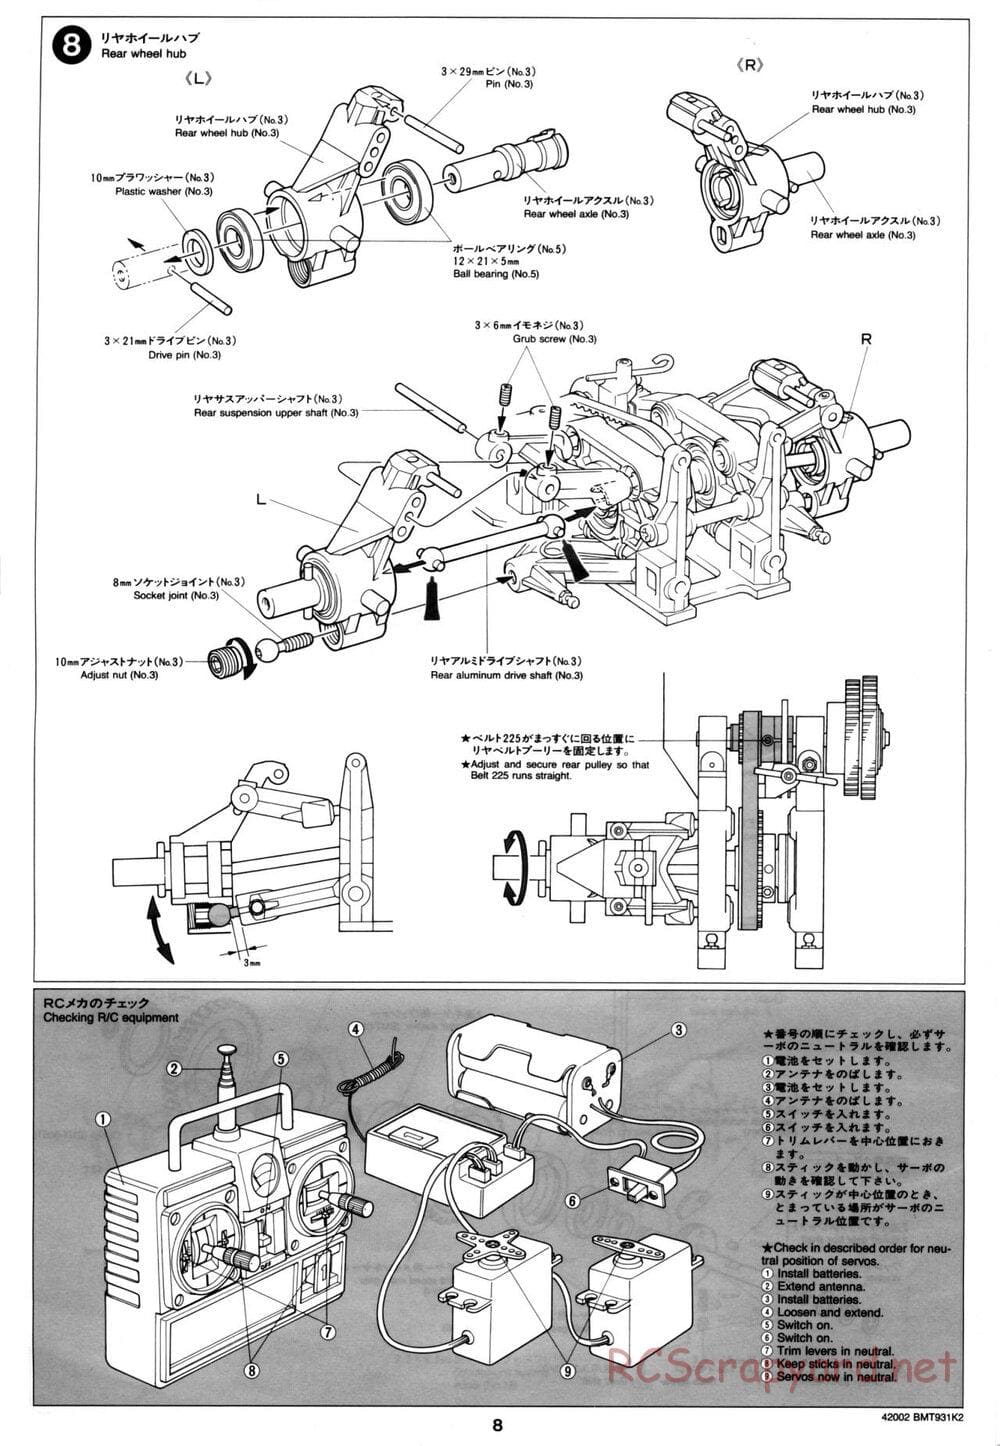 Tamiya - BMT 931 K2 Racing Chassis - Manual - Page 8